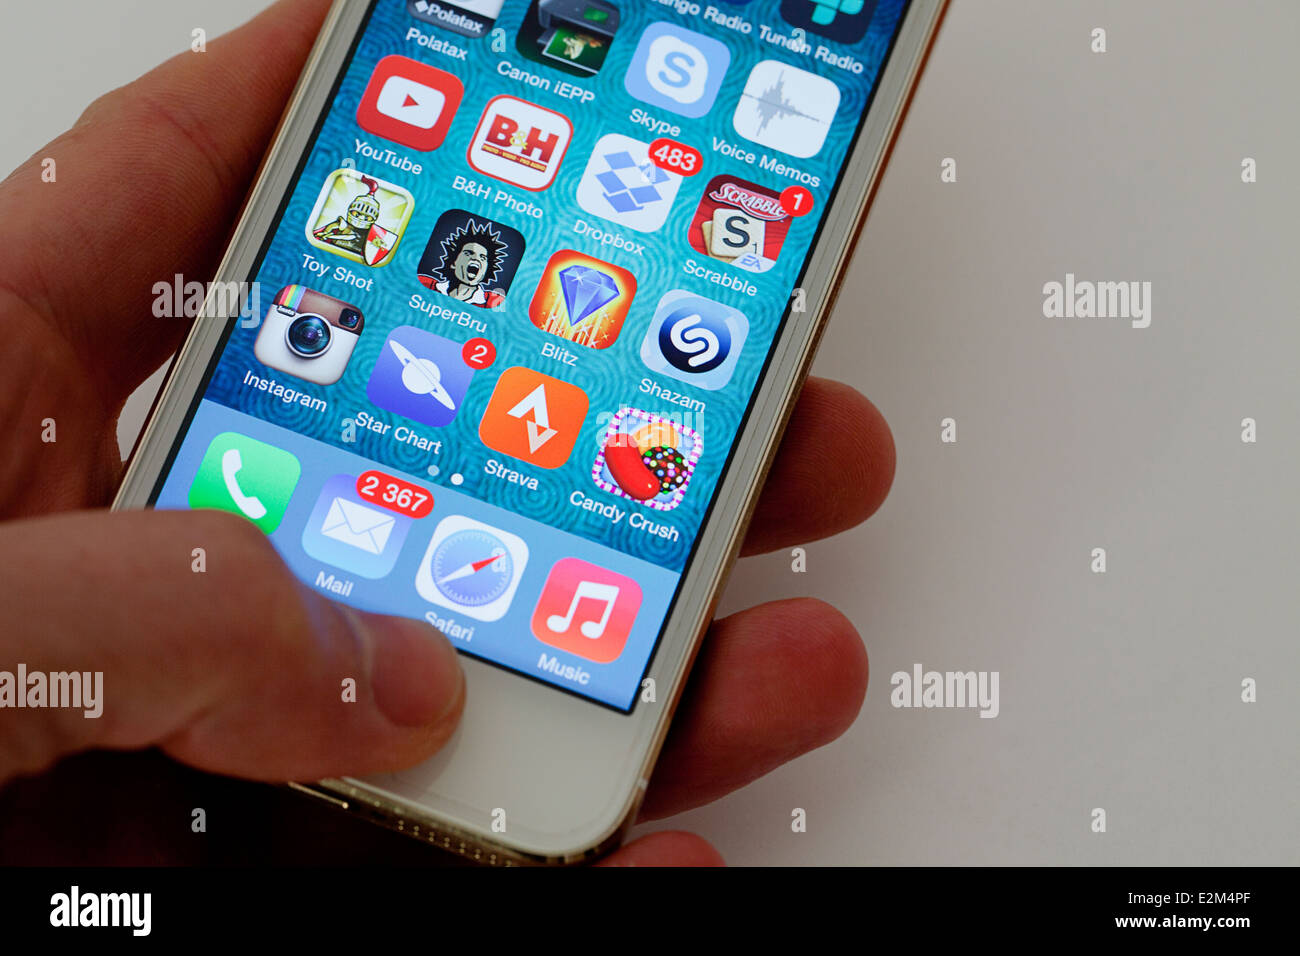 Apple iphone 5 immagini e fotografie stock ad alta risoluzione - Alamy